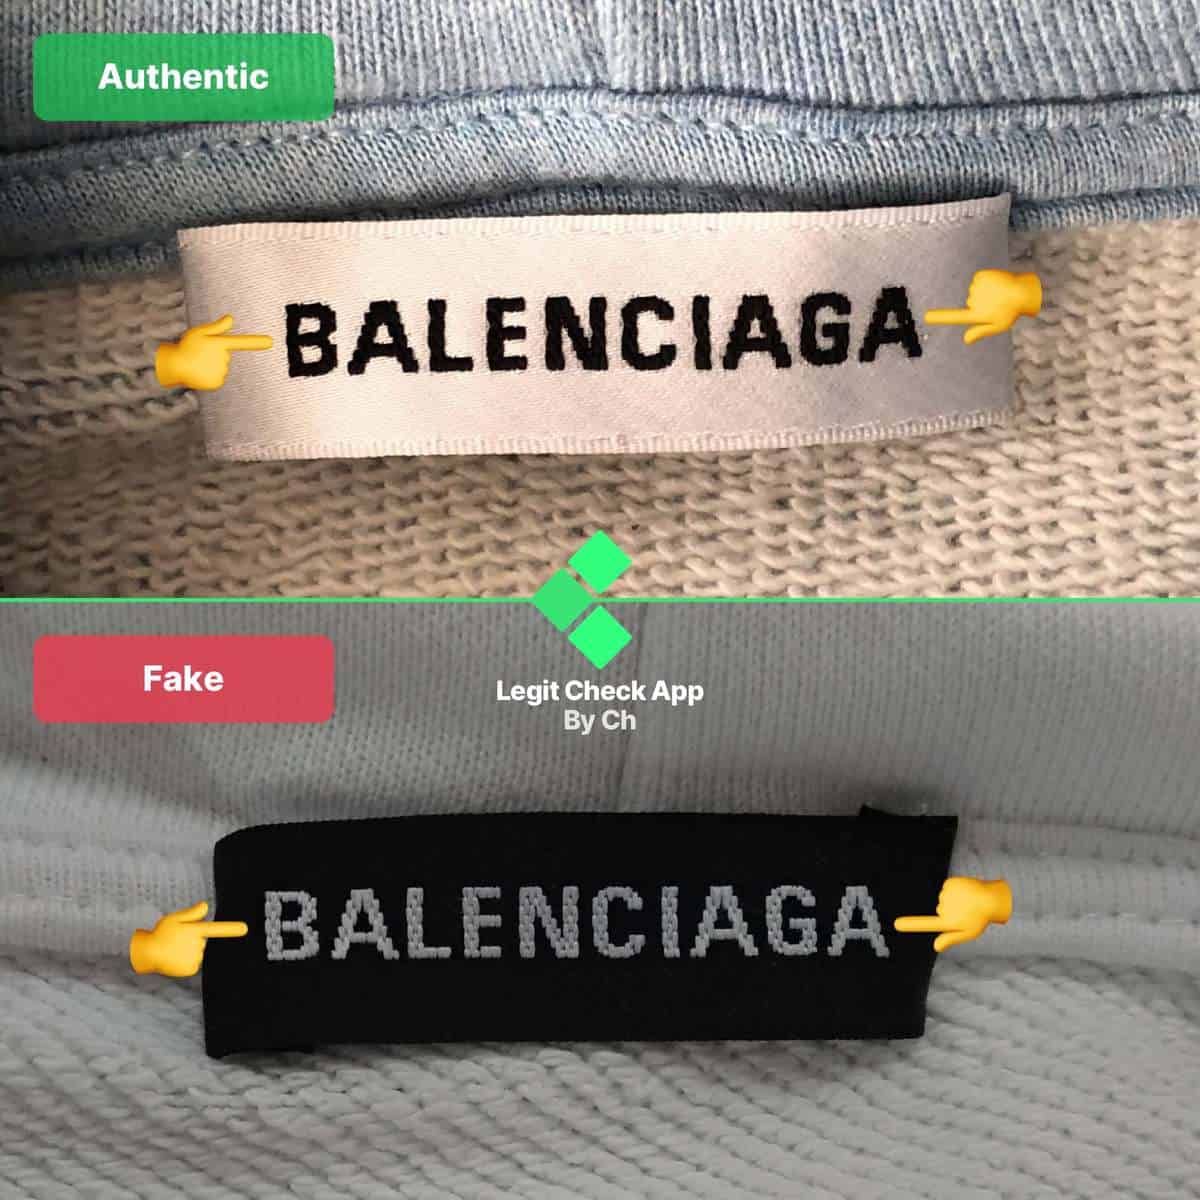 How To Spot Fake Balenciaga - Legit Check